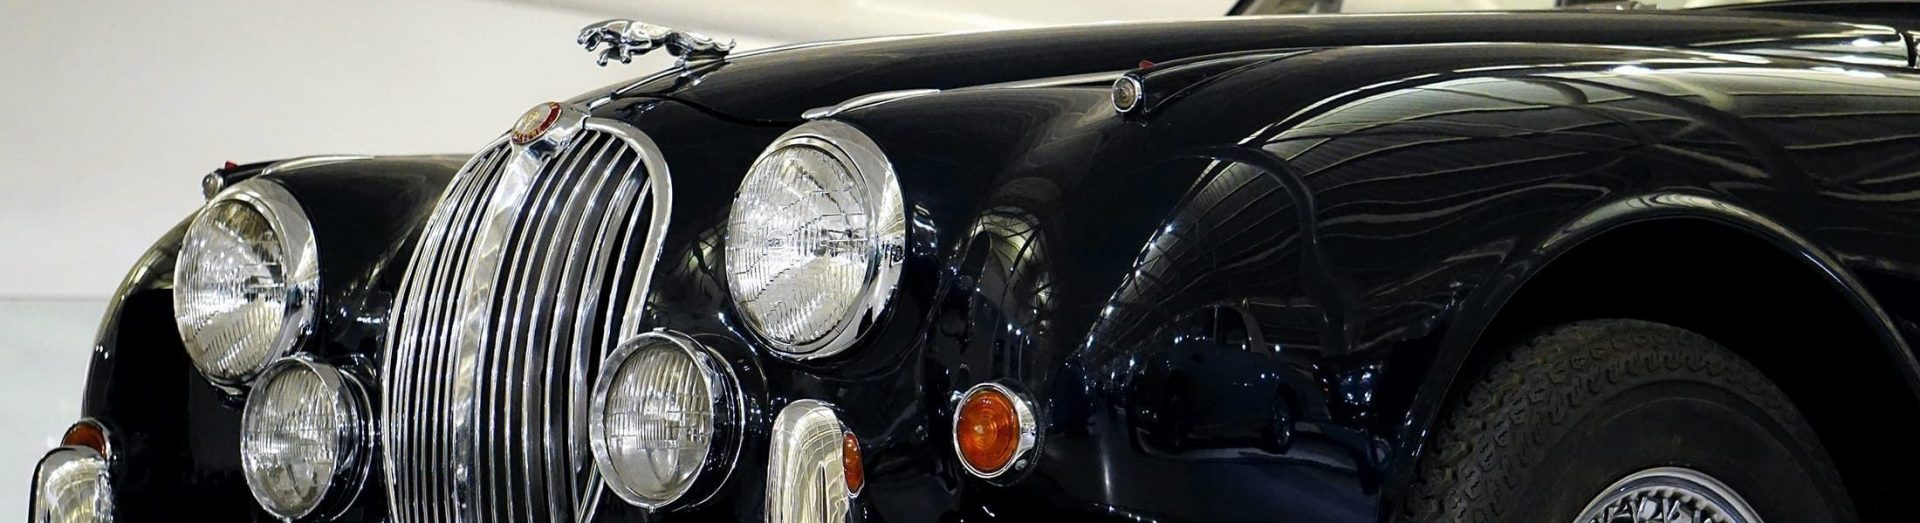 Front side view of Jaguar classic car